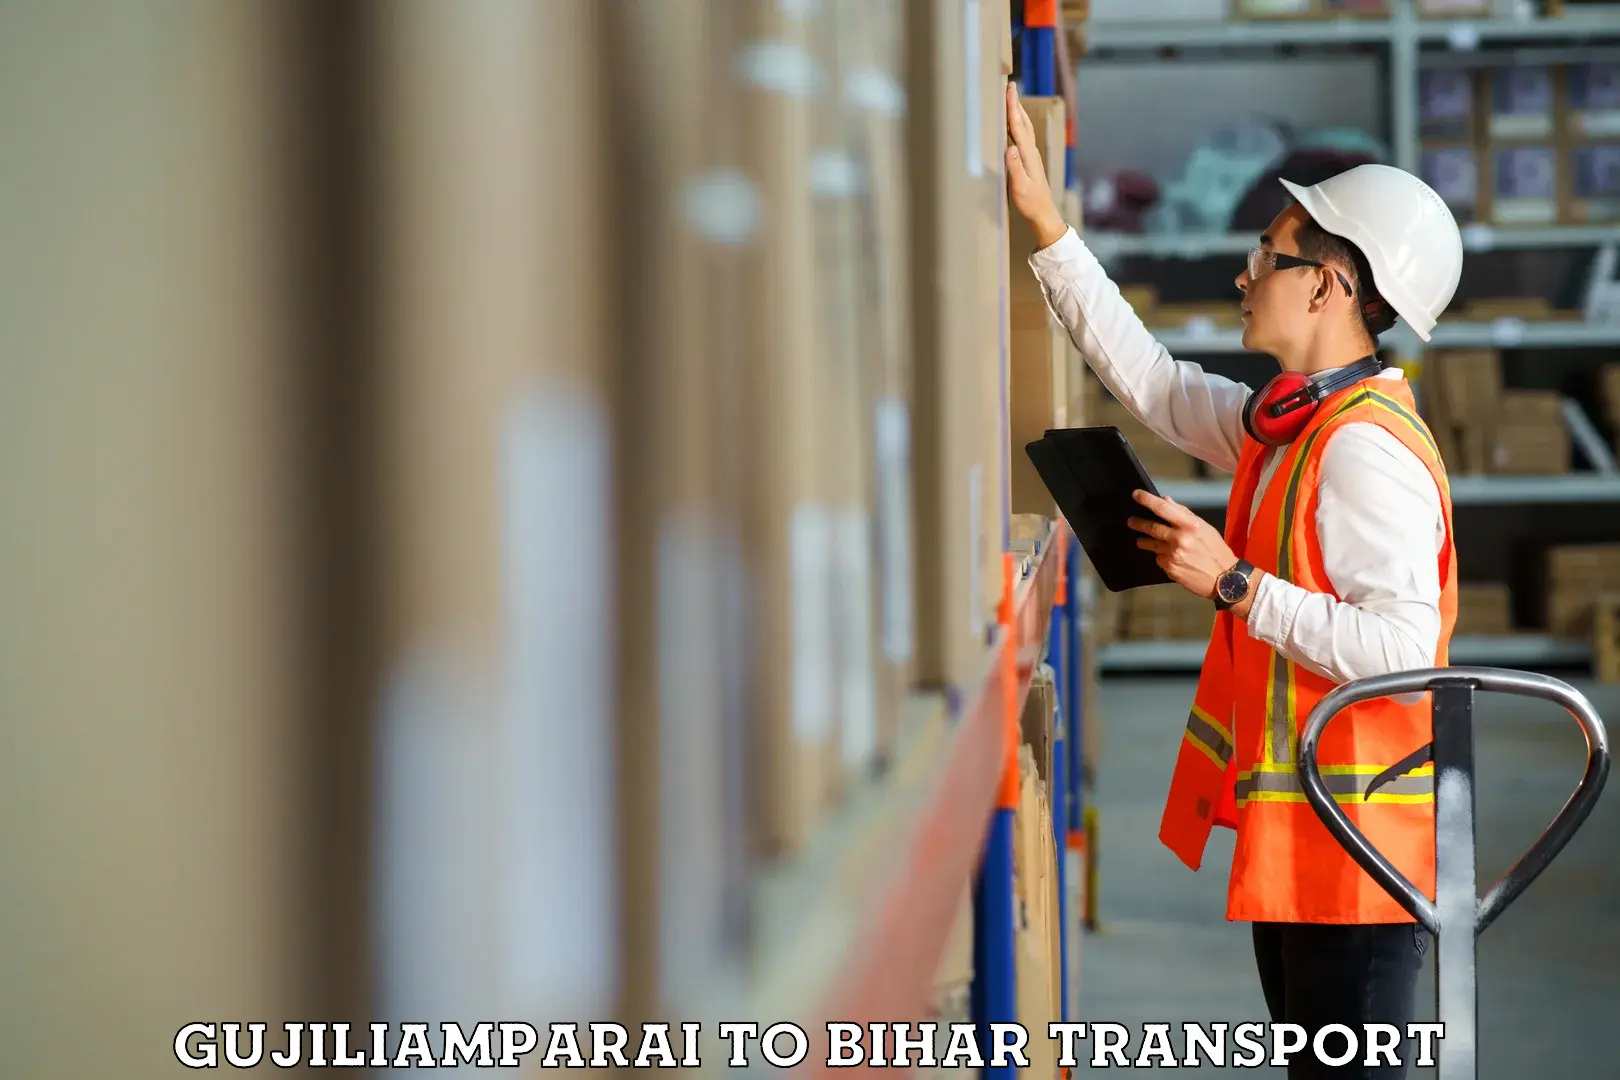 Furniture transport service in Gujiliamparai to Minapur